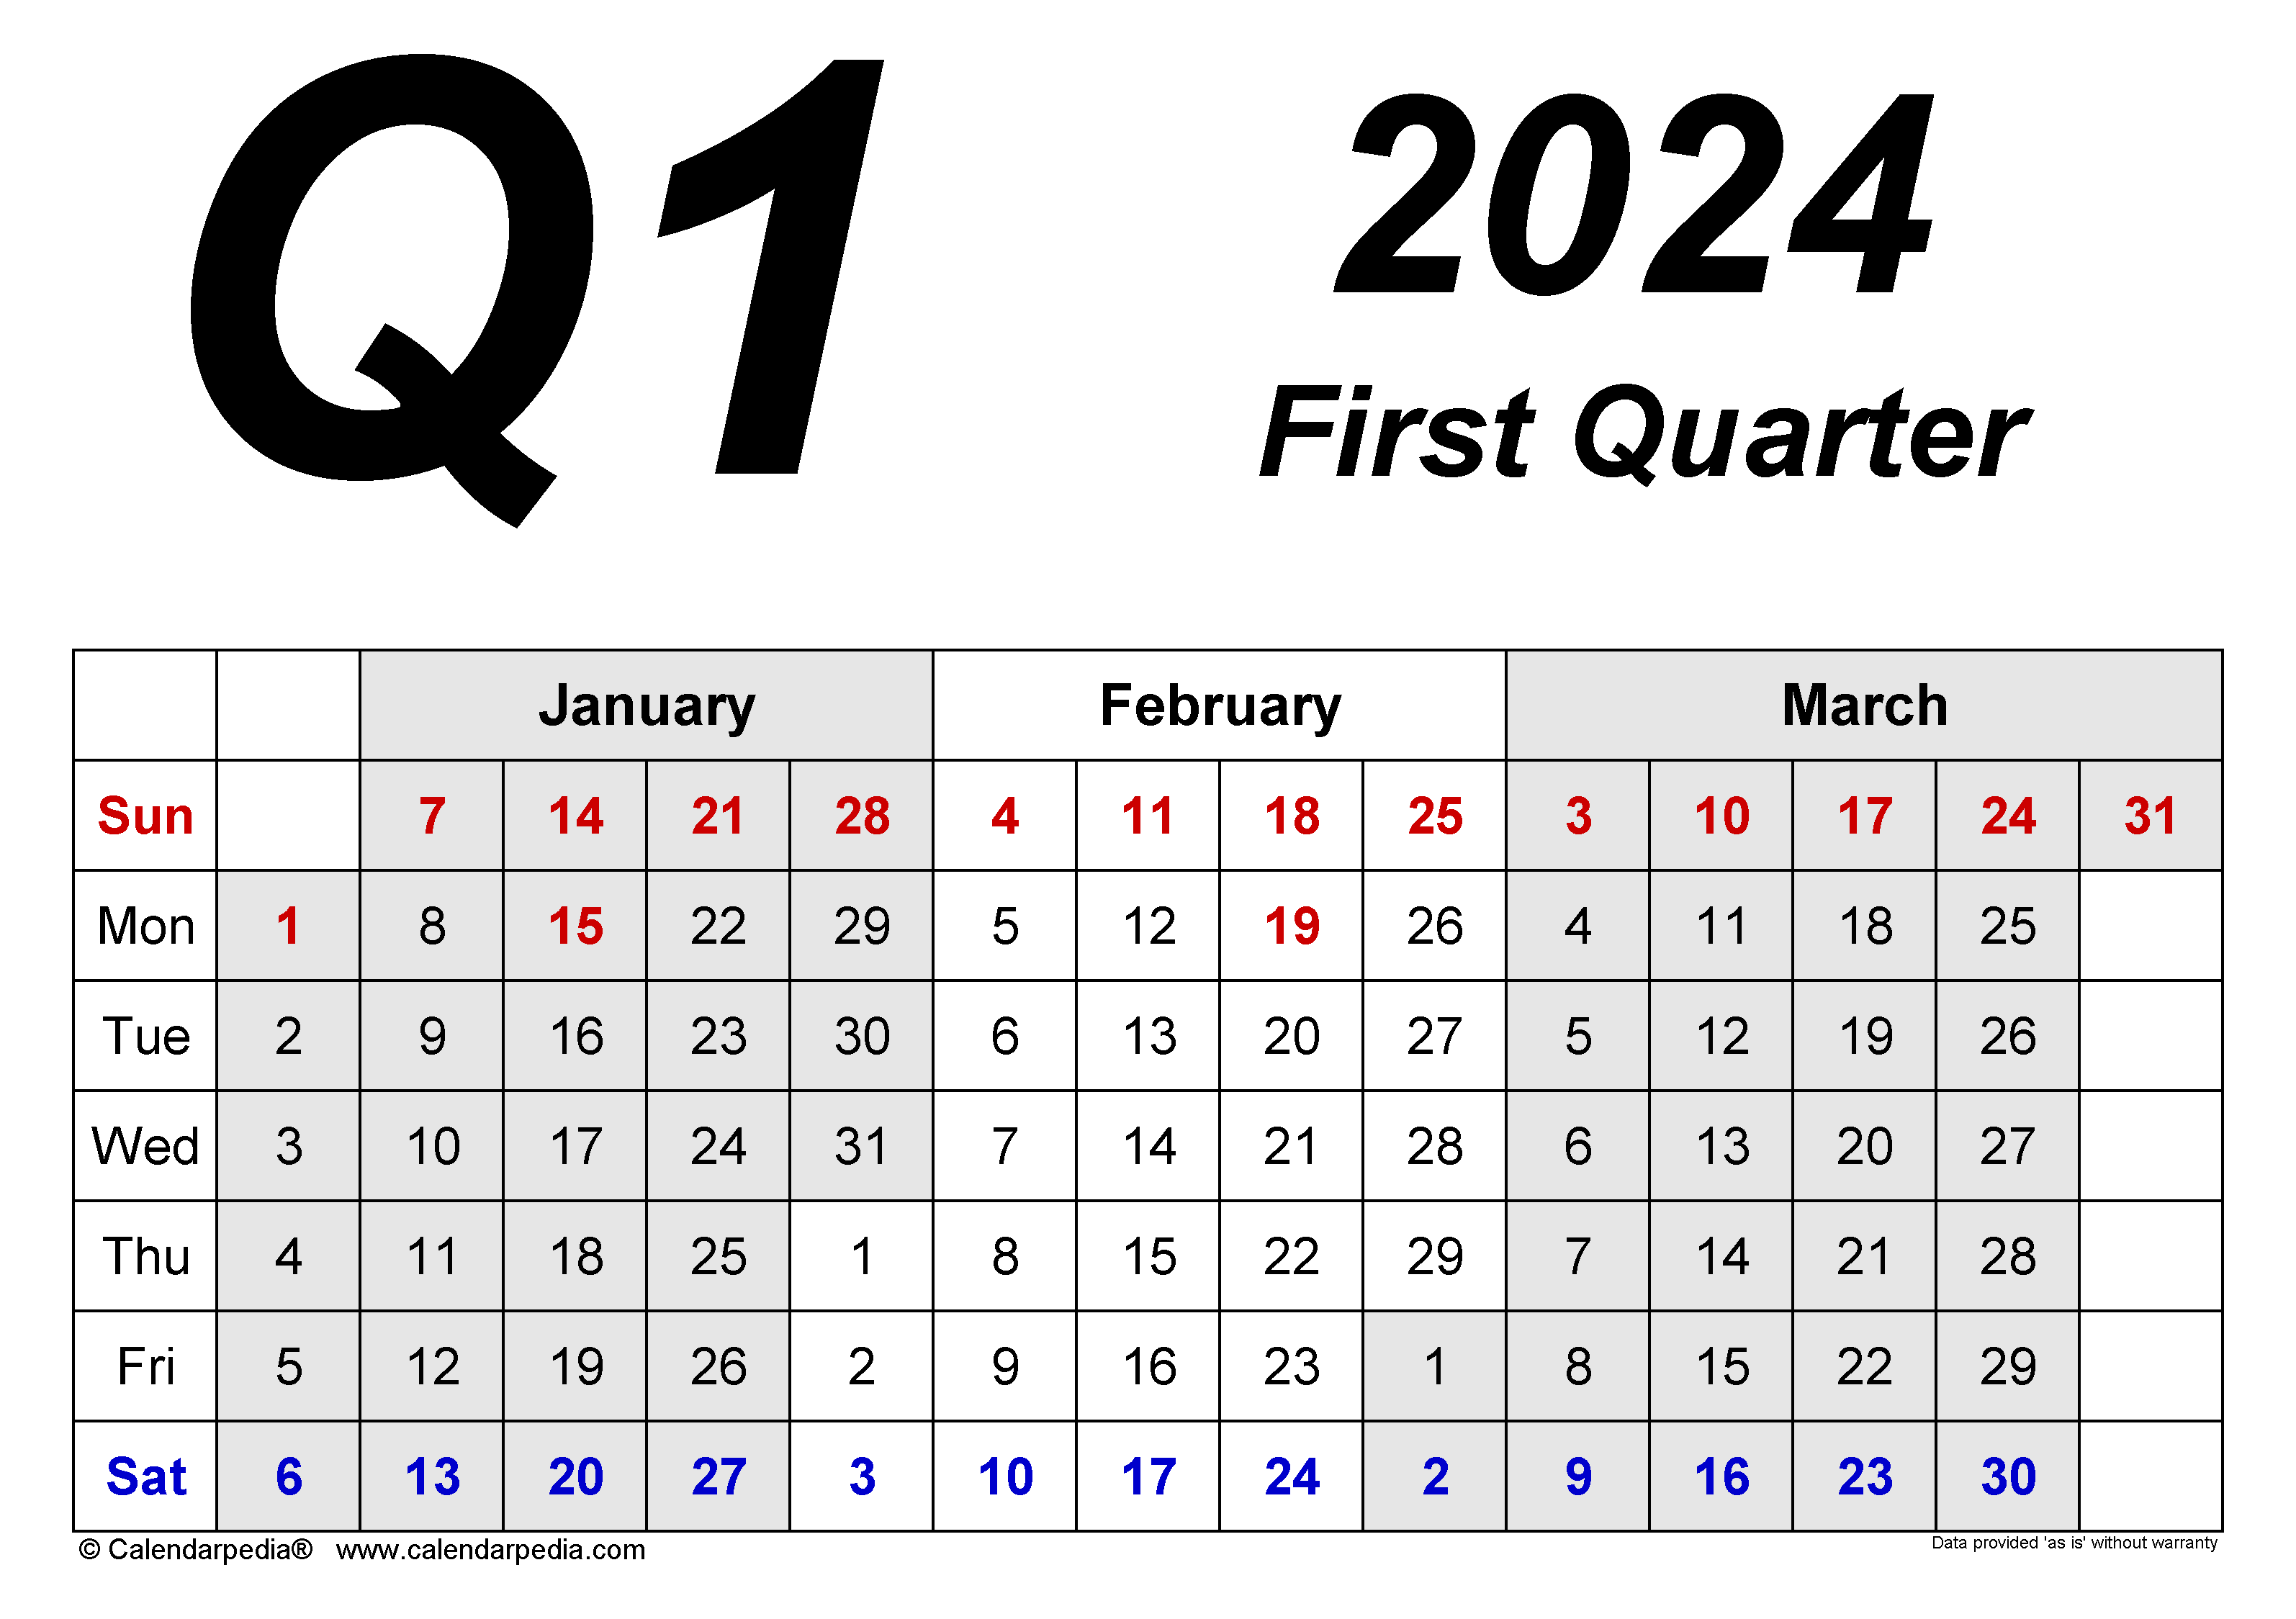 Quarterly Calendars 2024 - Free Printable Pdf Templates for Q1 2024 Calendar Printable